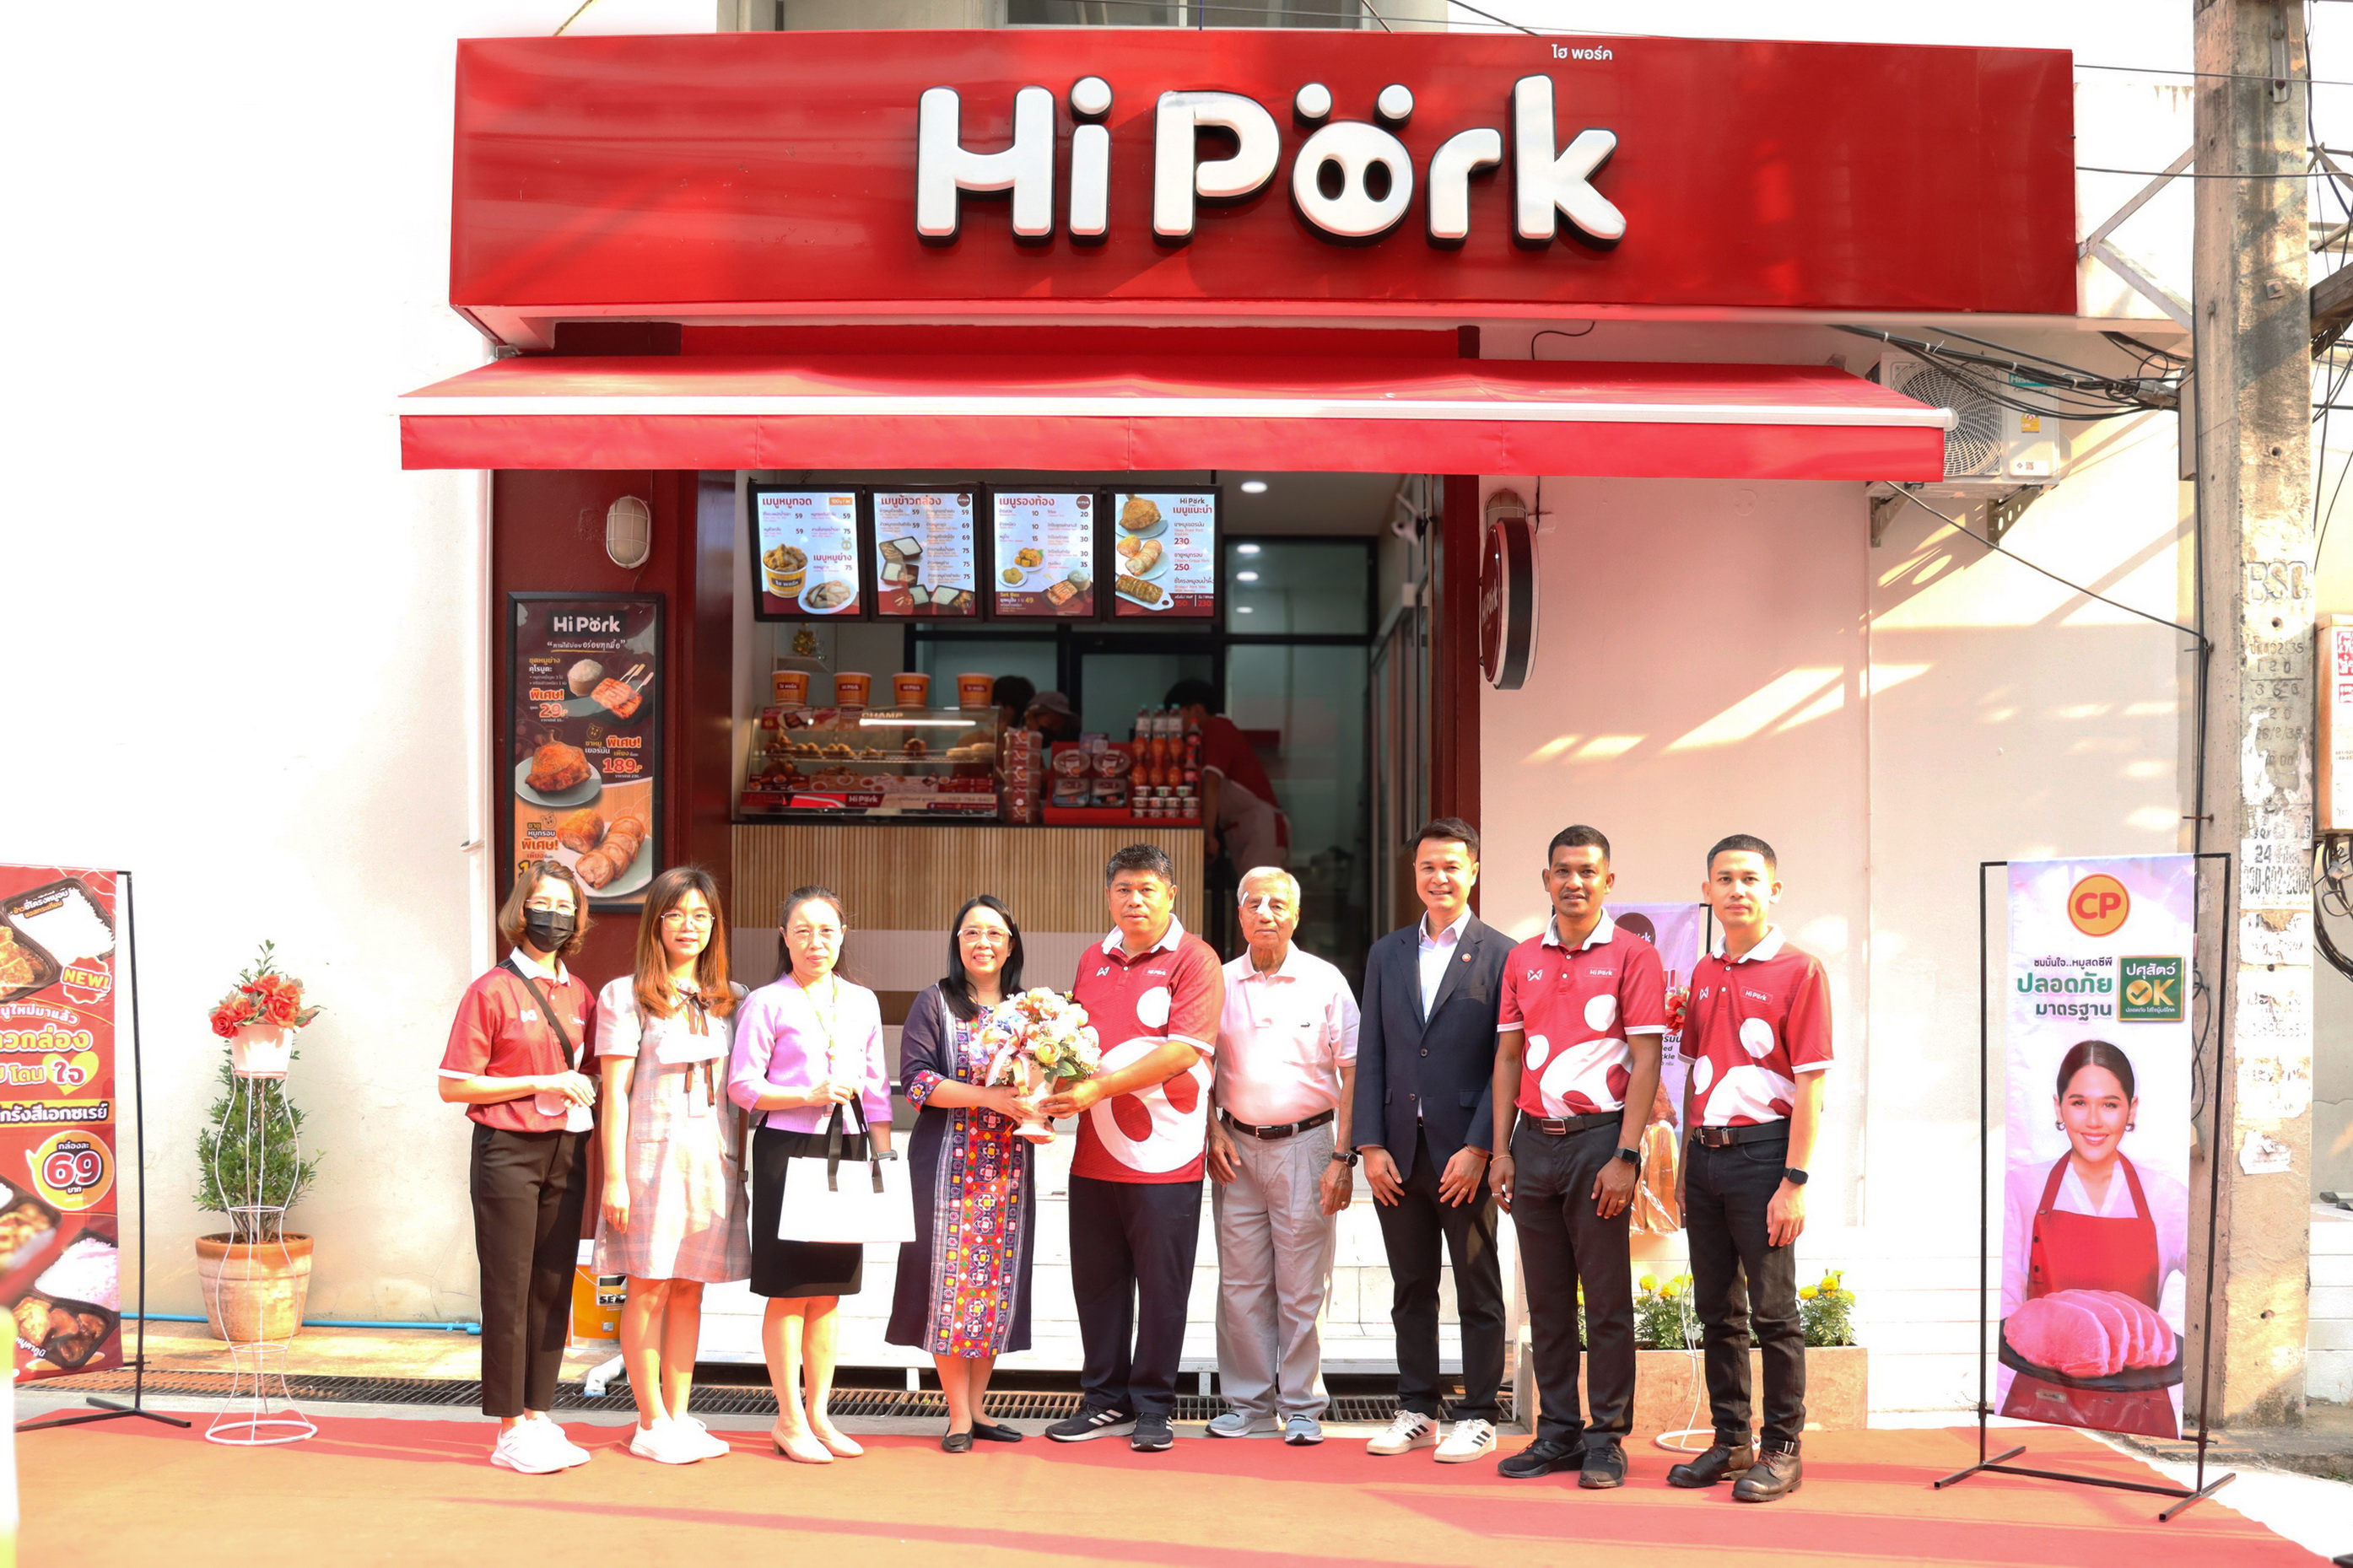 
	ร้าน Hi Pork (ไฮพอร์ค) มอบทุนการศึกษาให้แก่นักศึกษาพยาบาล มช. ที่ขาดแคลนทุนทรัพย์
